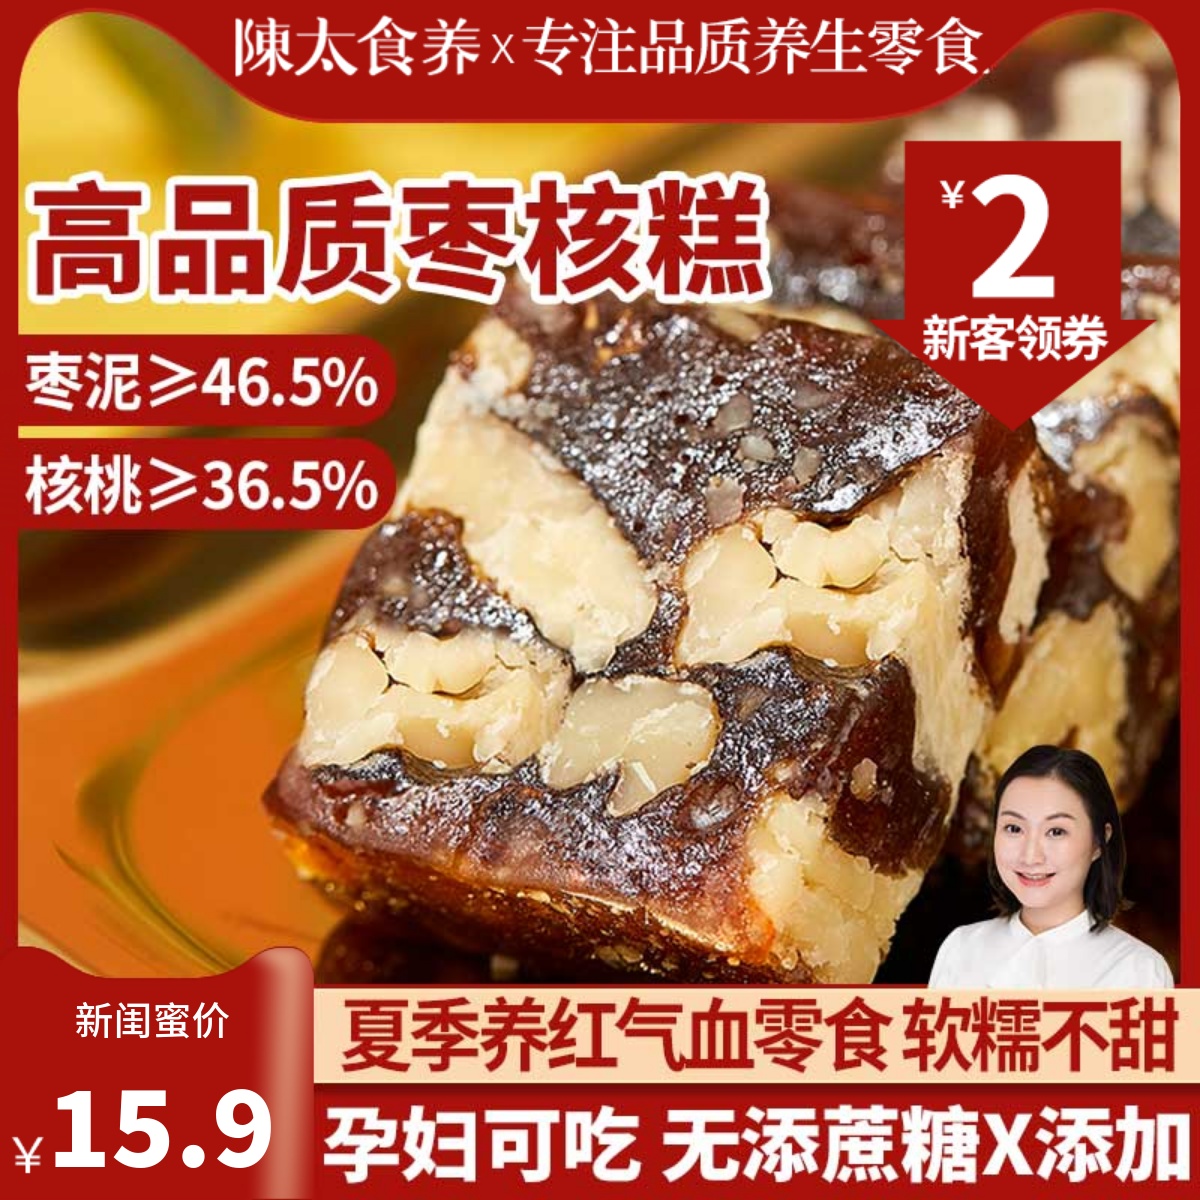 陳太食养南枣泥核桃糕红枣糕点孕产妇健康营养小吃零食品礼盒